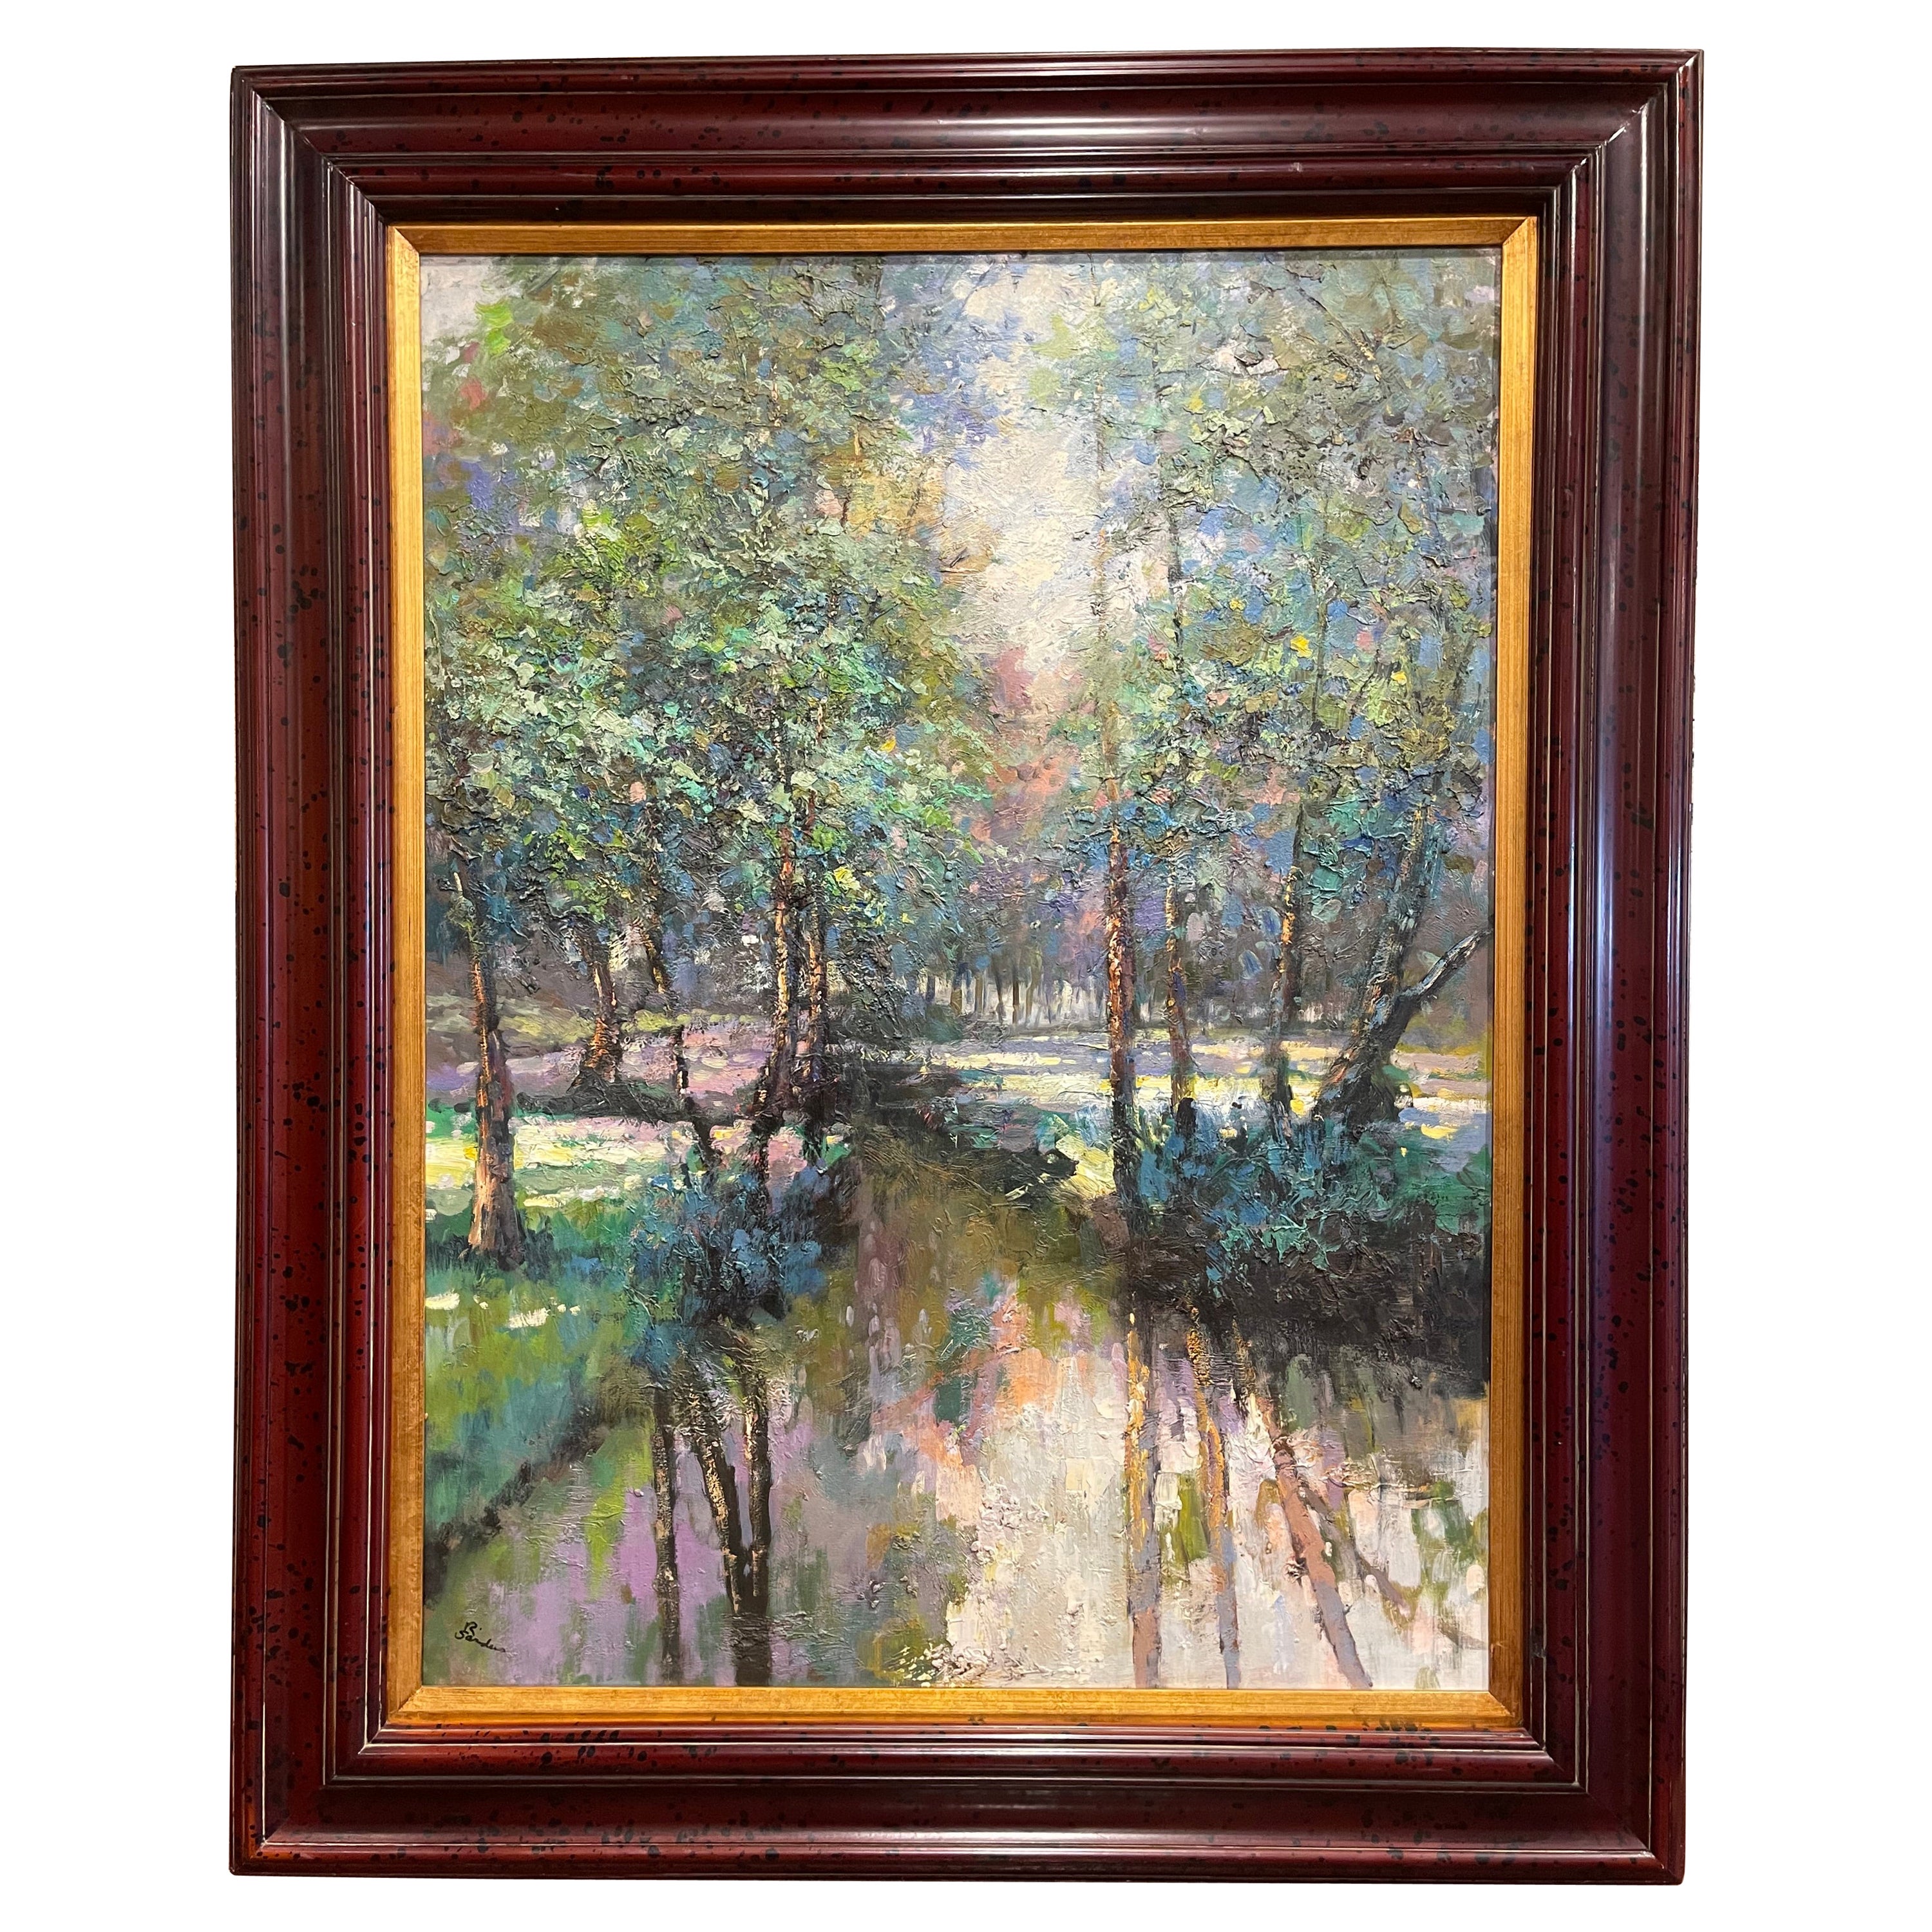 Huile sur toile encadrée de la fin du 20e siècle - Peinture de paysage signée R. Sanders